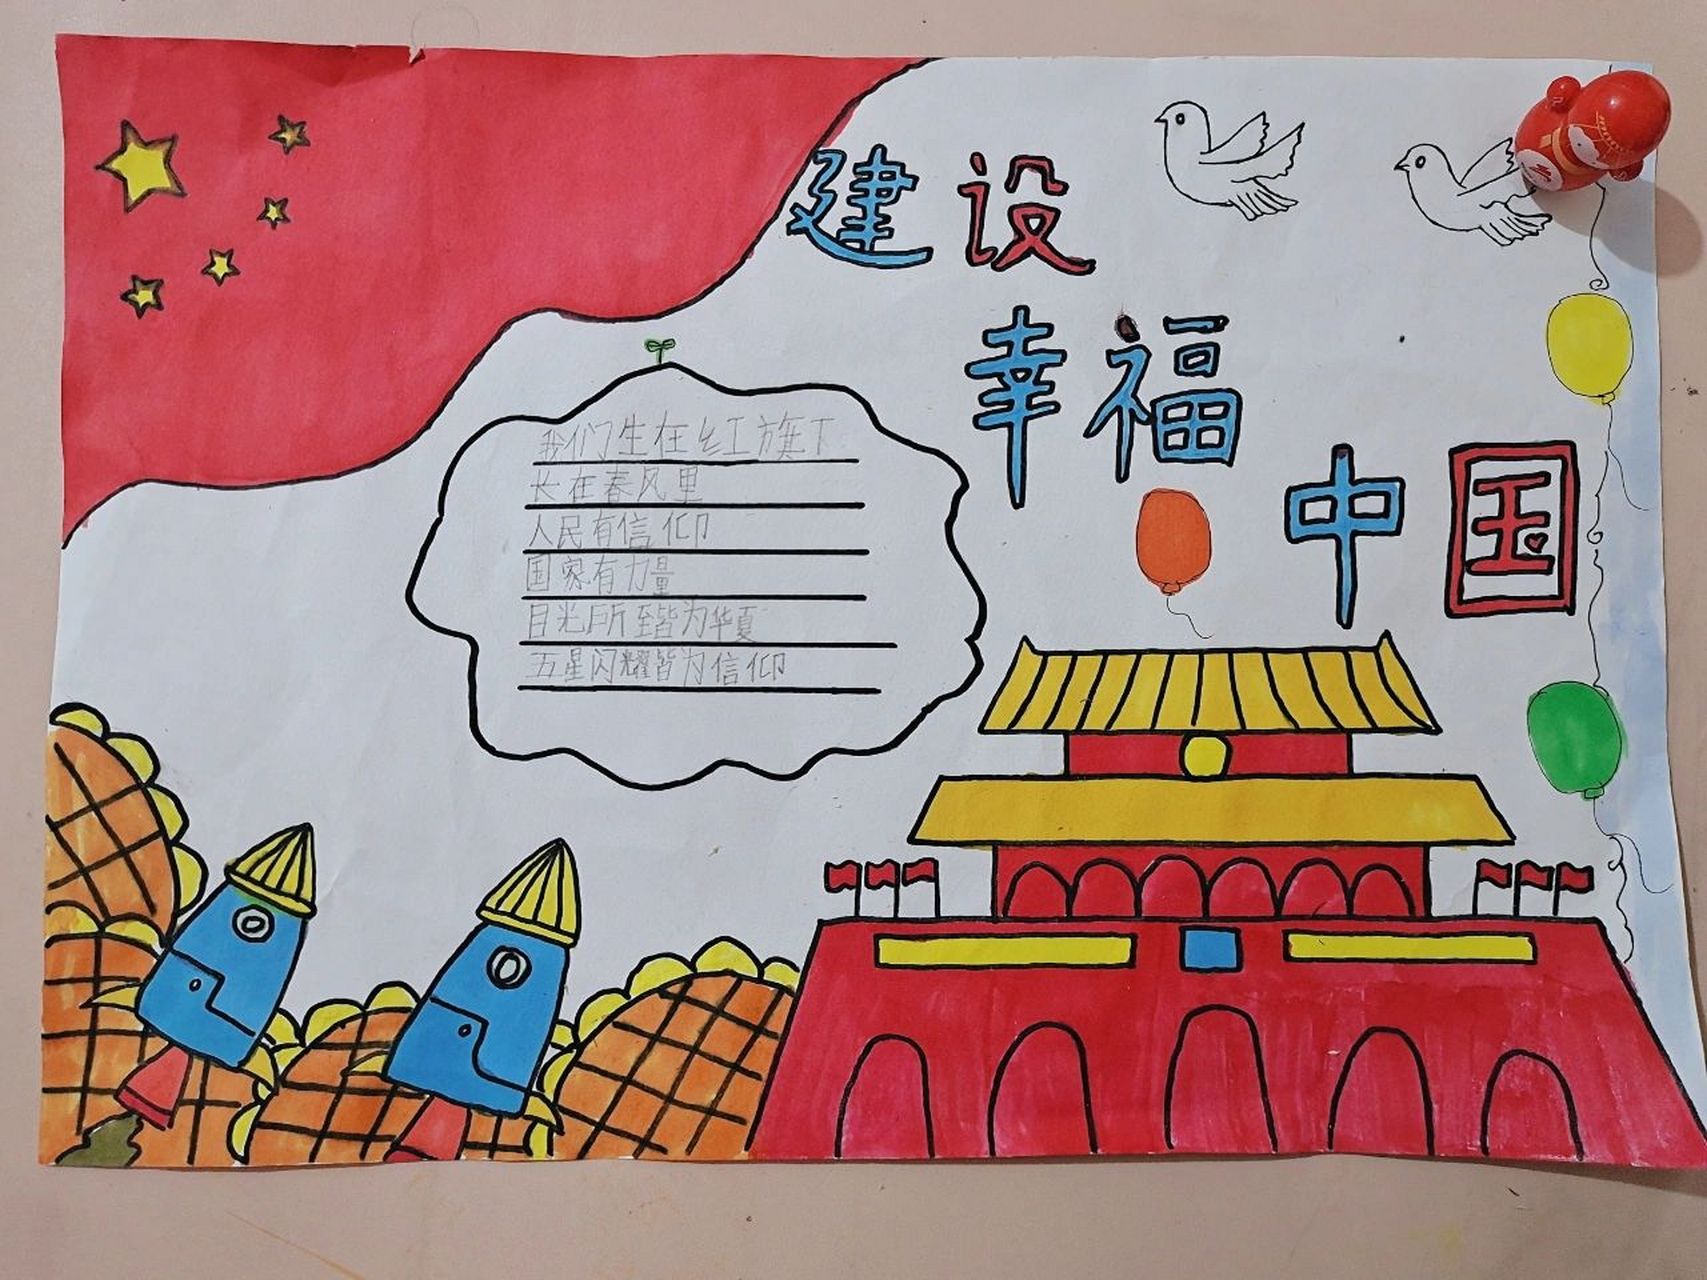 《建设幸福中国》主题手抄报  学校的手抄报可真多 98一年级的娃还